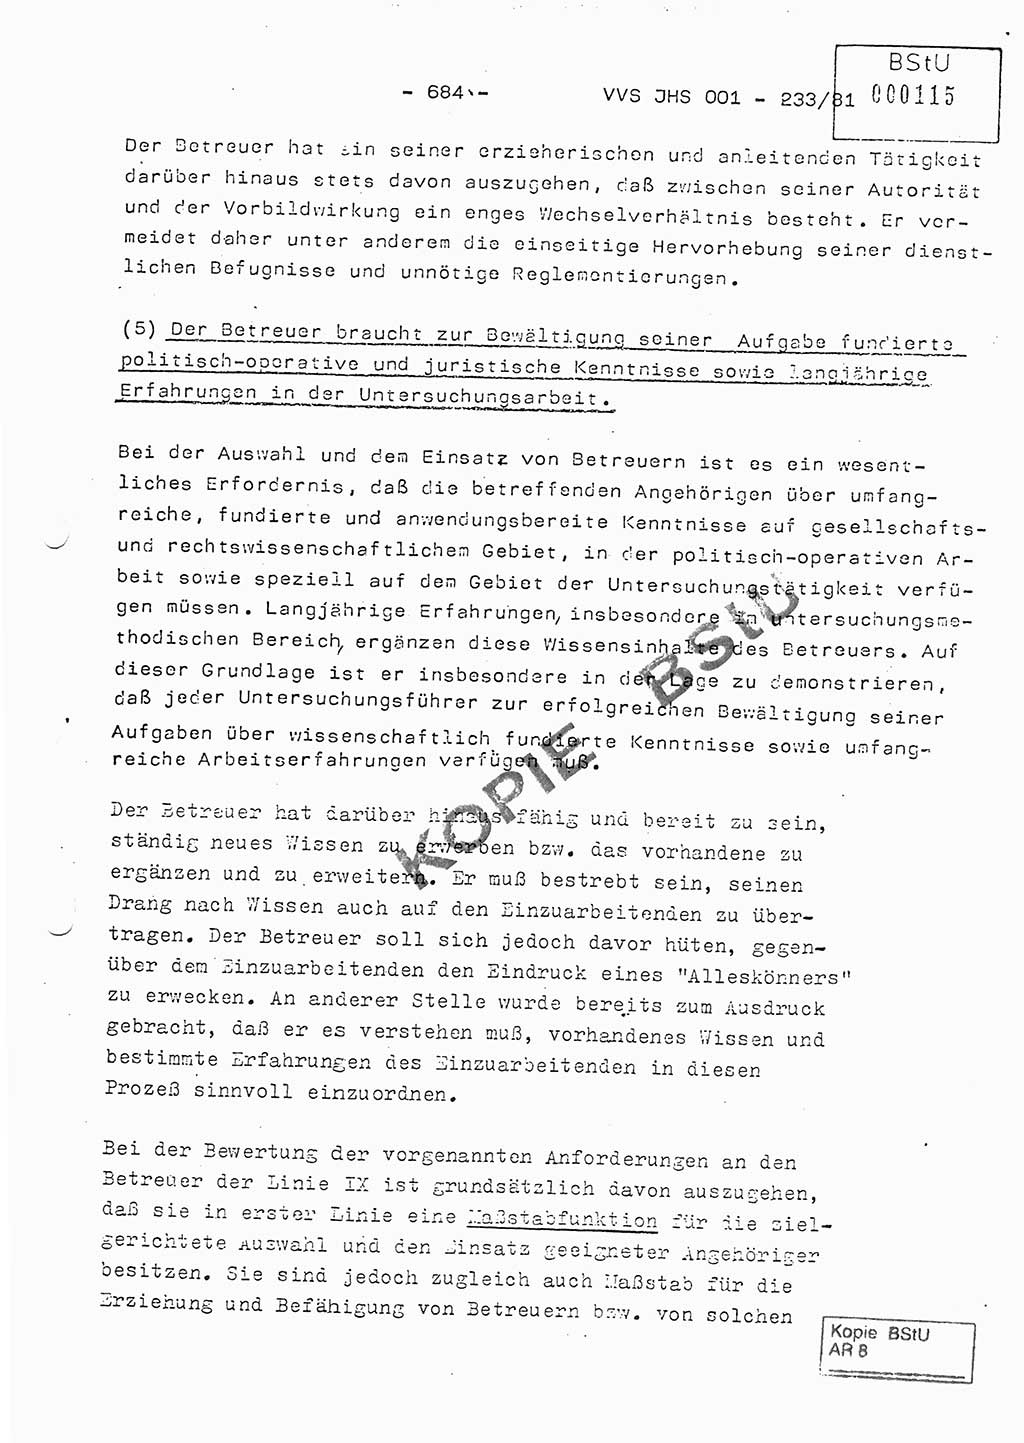 Dissertation Oberstleutnant Horst Zank (JHS), Oberstleutnant Dr. Karl-Heinz Knoblauch (JHS), Oberstleutnant Gustav-Adolf Kowalewski (HA Ⅸ), Oberstleutnant Wolfgang Plötner (HA Ⅸ), Ministerium für Staatssicherheit (MfS) [Deutsche Demokratische Republik (DDR)], Juristische Hochschule (JHS), Vertrauliche Verschlußsache (VVS) o001-233/81, Potsdam 1981, Blatt 684 (Diss. MfS DDR JHS VVS o001-233/81 1981, Bl. 684)